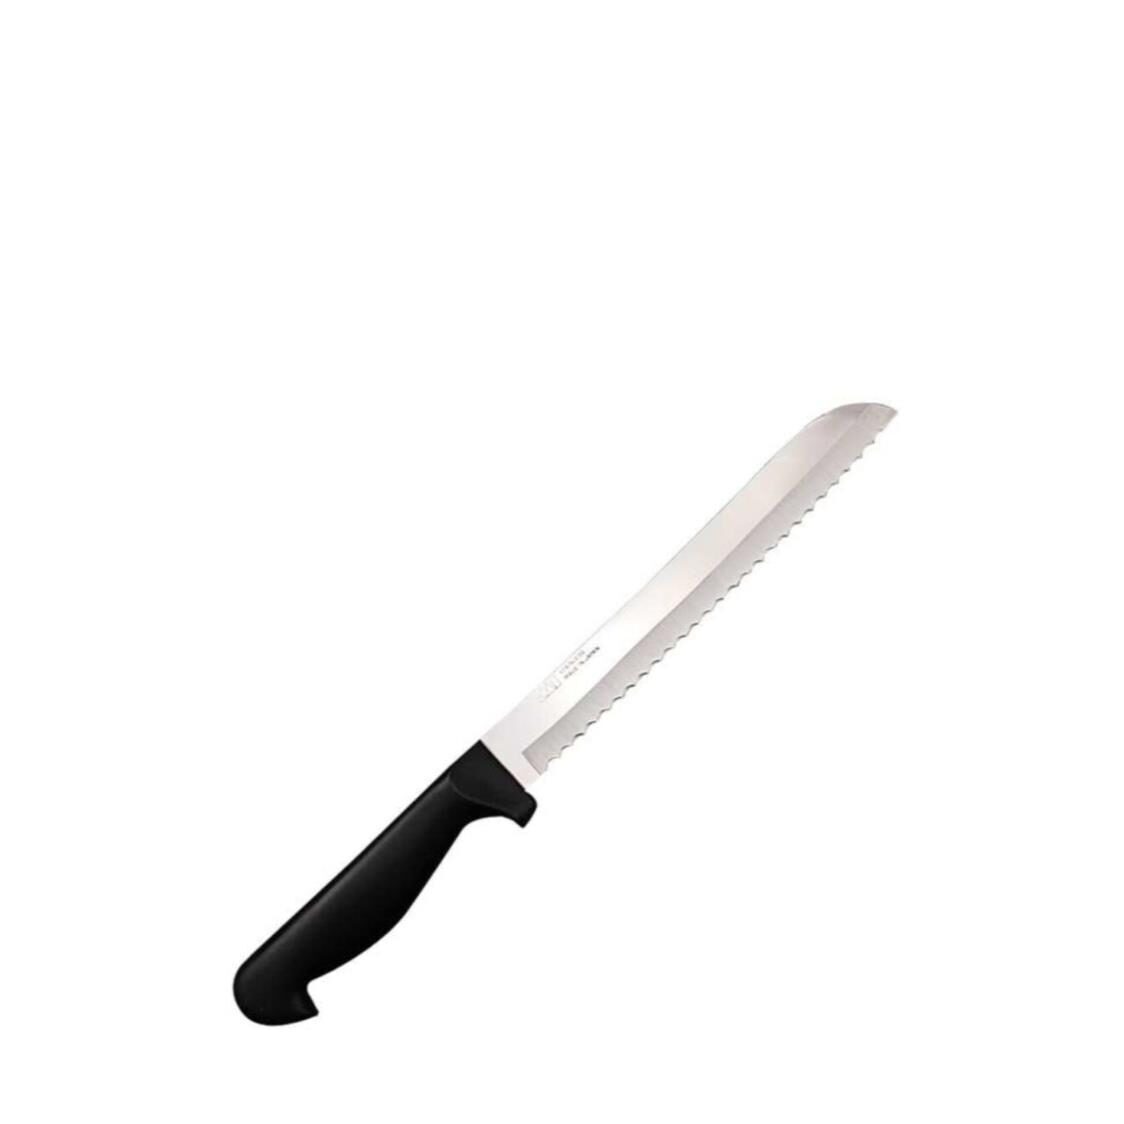 KAI 1300N Series Bread Knife Made in Japan 1392N